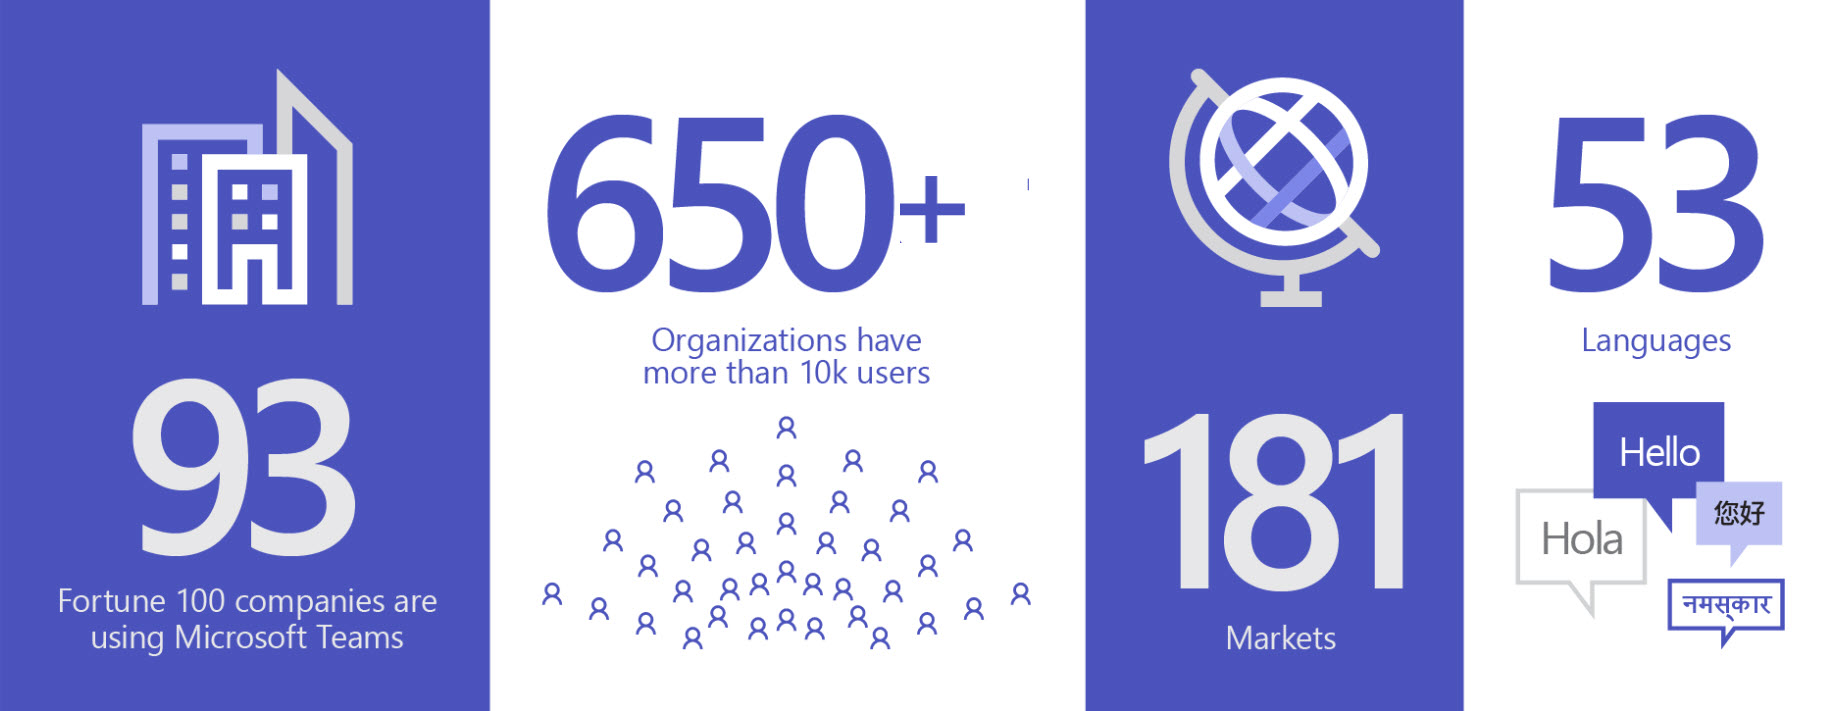 Bild som visar 93 organisationer som använder Teams, mer än 650 organisationer har fler än 10 000 användare, på 181 marknader och 53 språk.